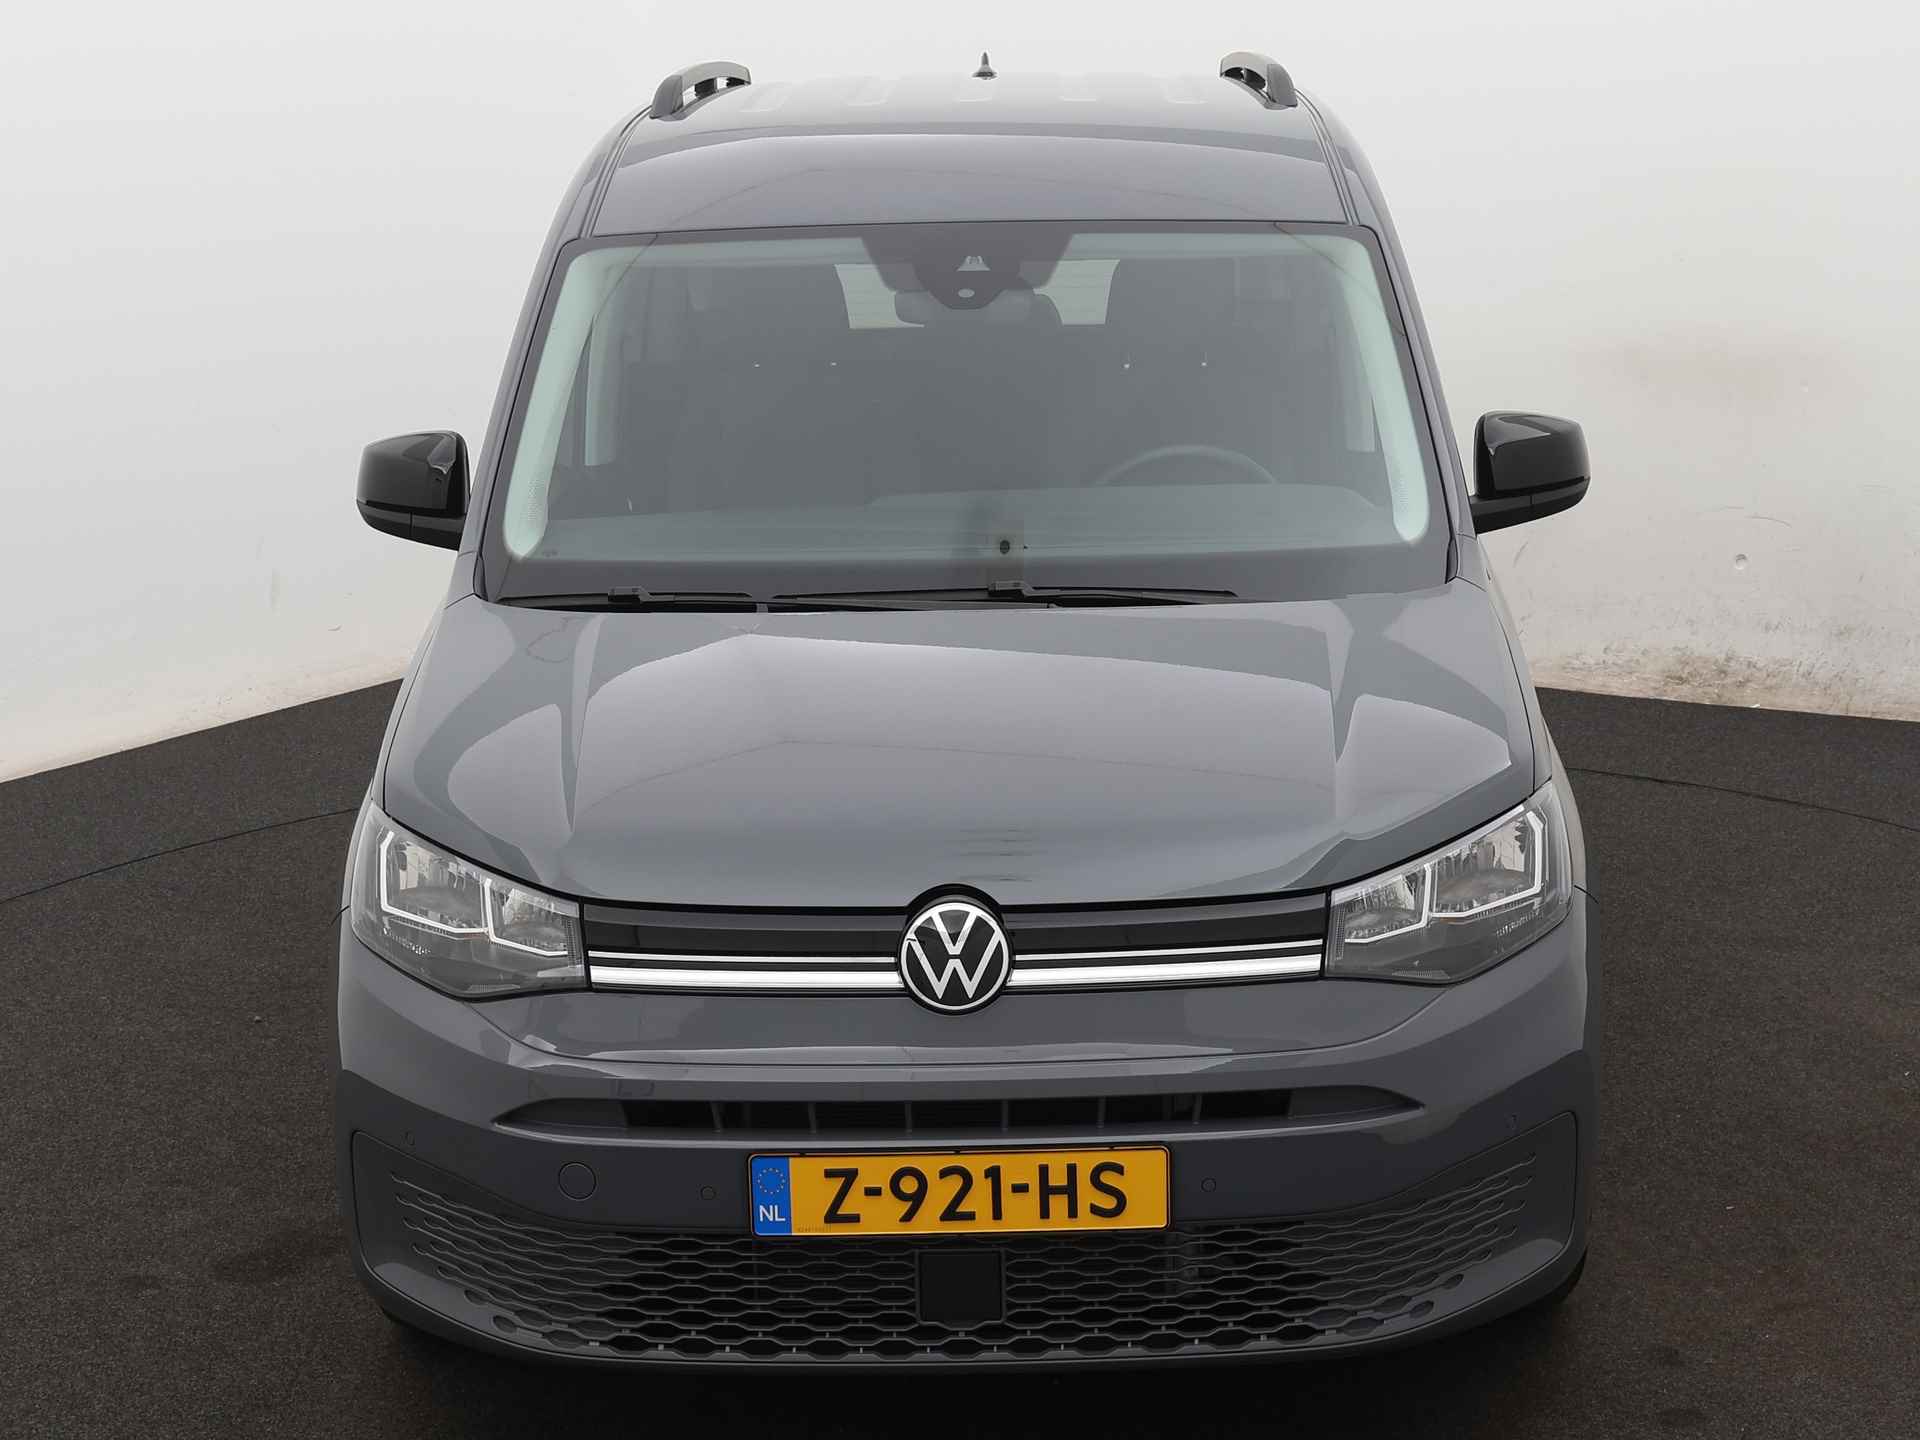 Volkswagen Caddy 1.5 TSI Life Ingepland voor nieuwe bodemverlaging t.b.v. rolstoelvervoer (Prijs incl. bodemverlaging) - 22/36